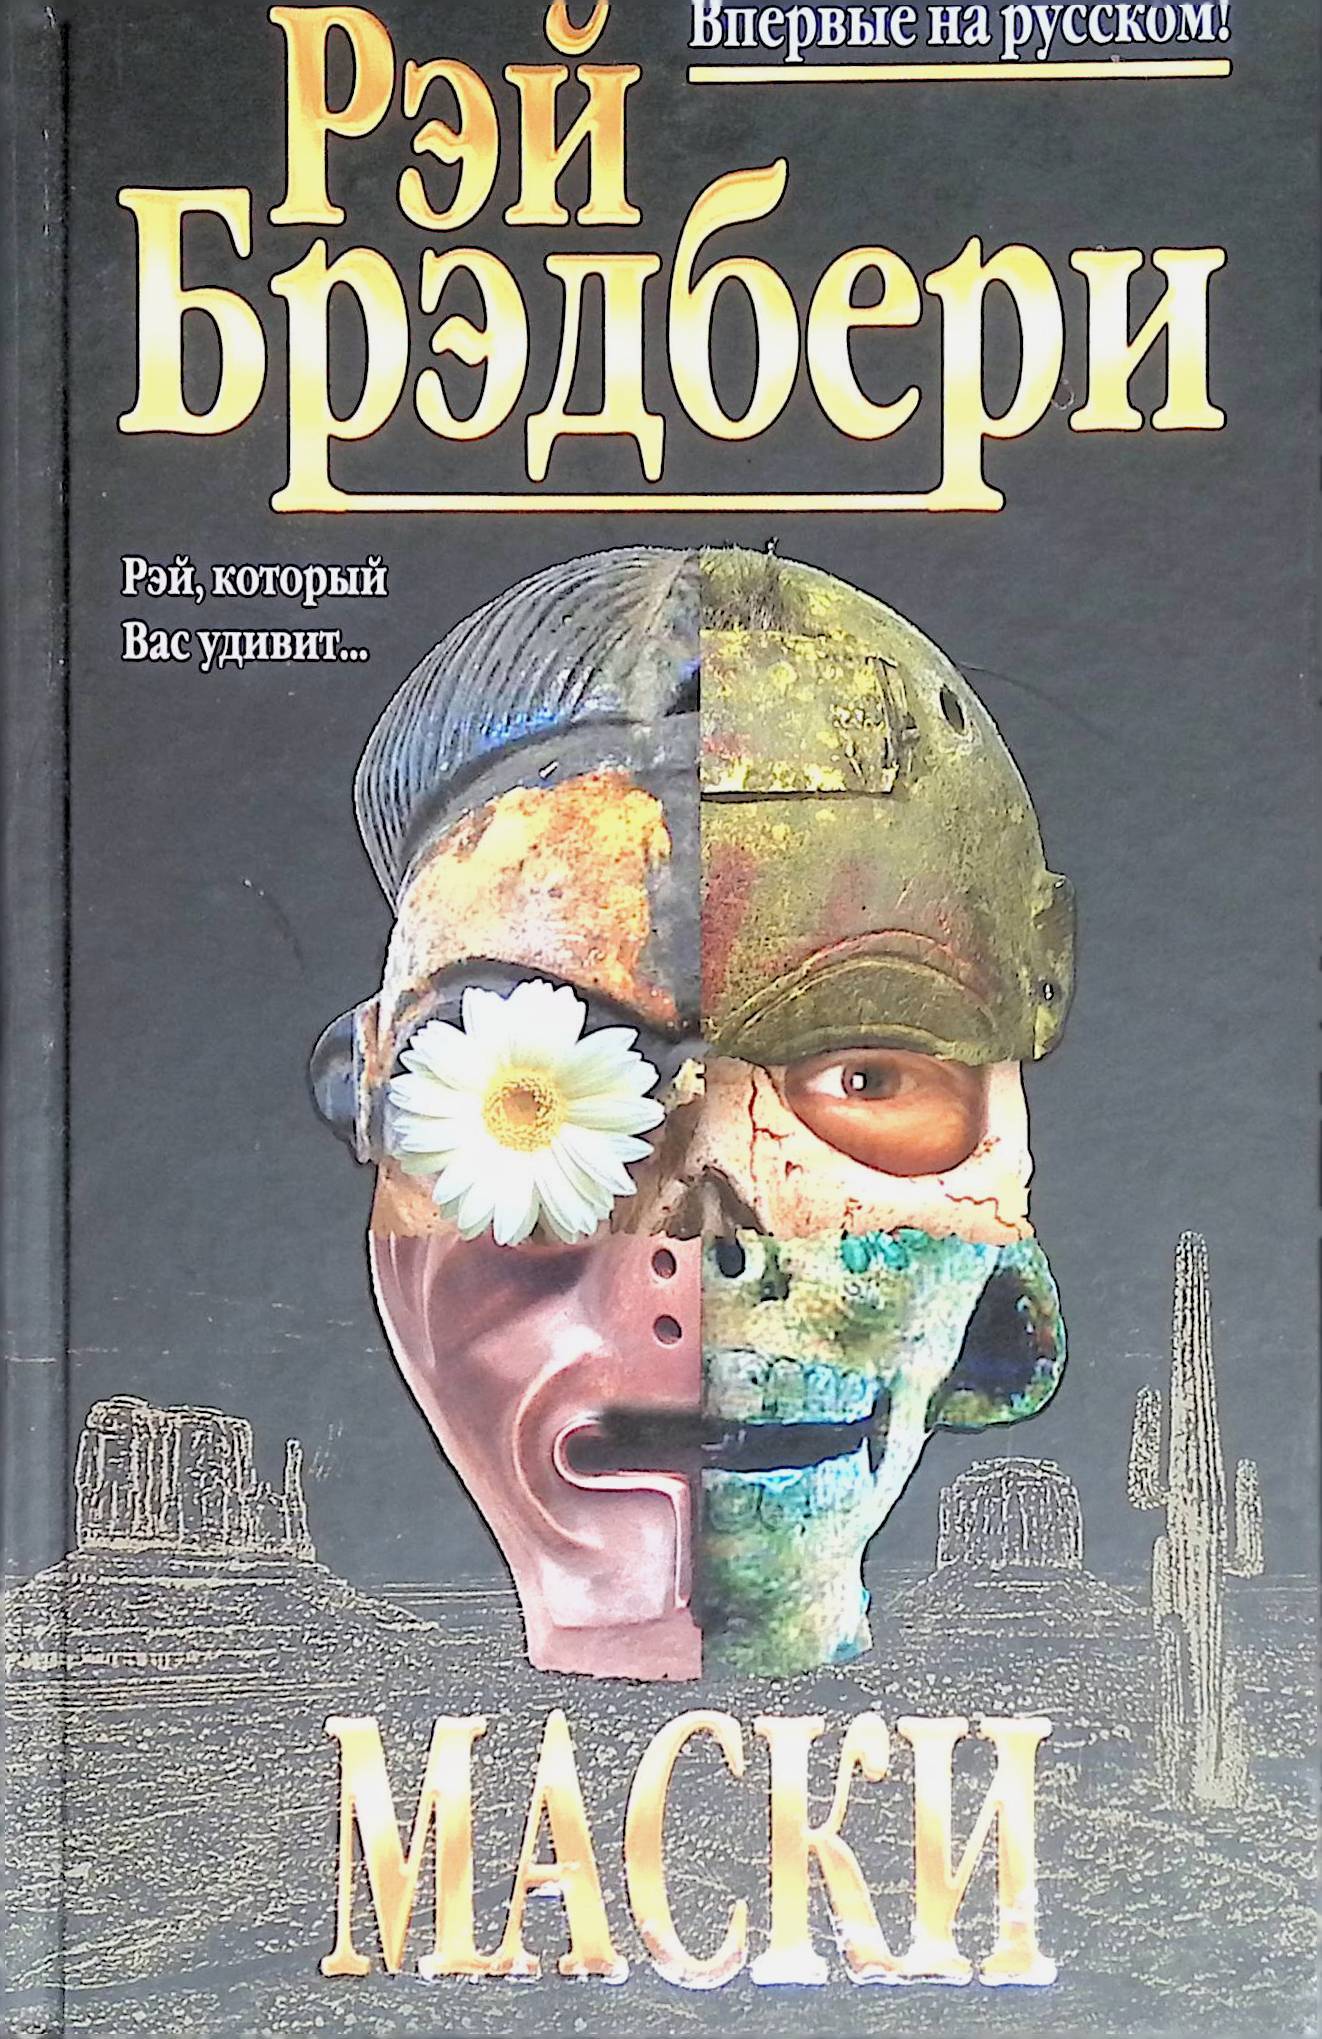 Книга без маски. Маска книга. Лица и маски книга детектив. Трилогия масок книга.